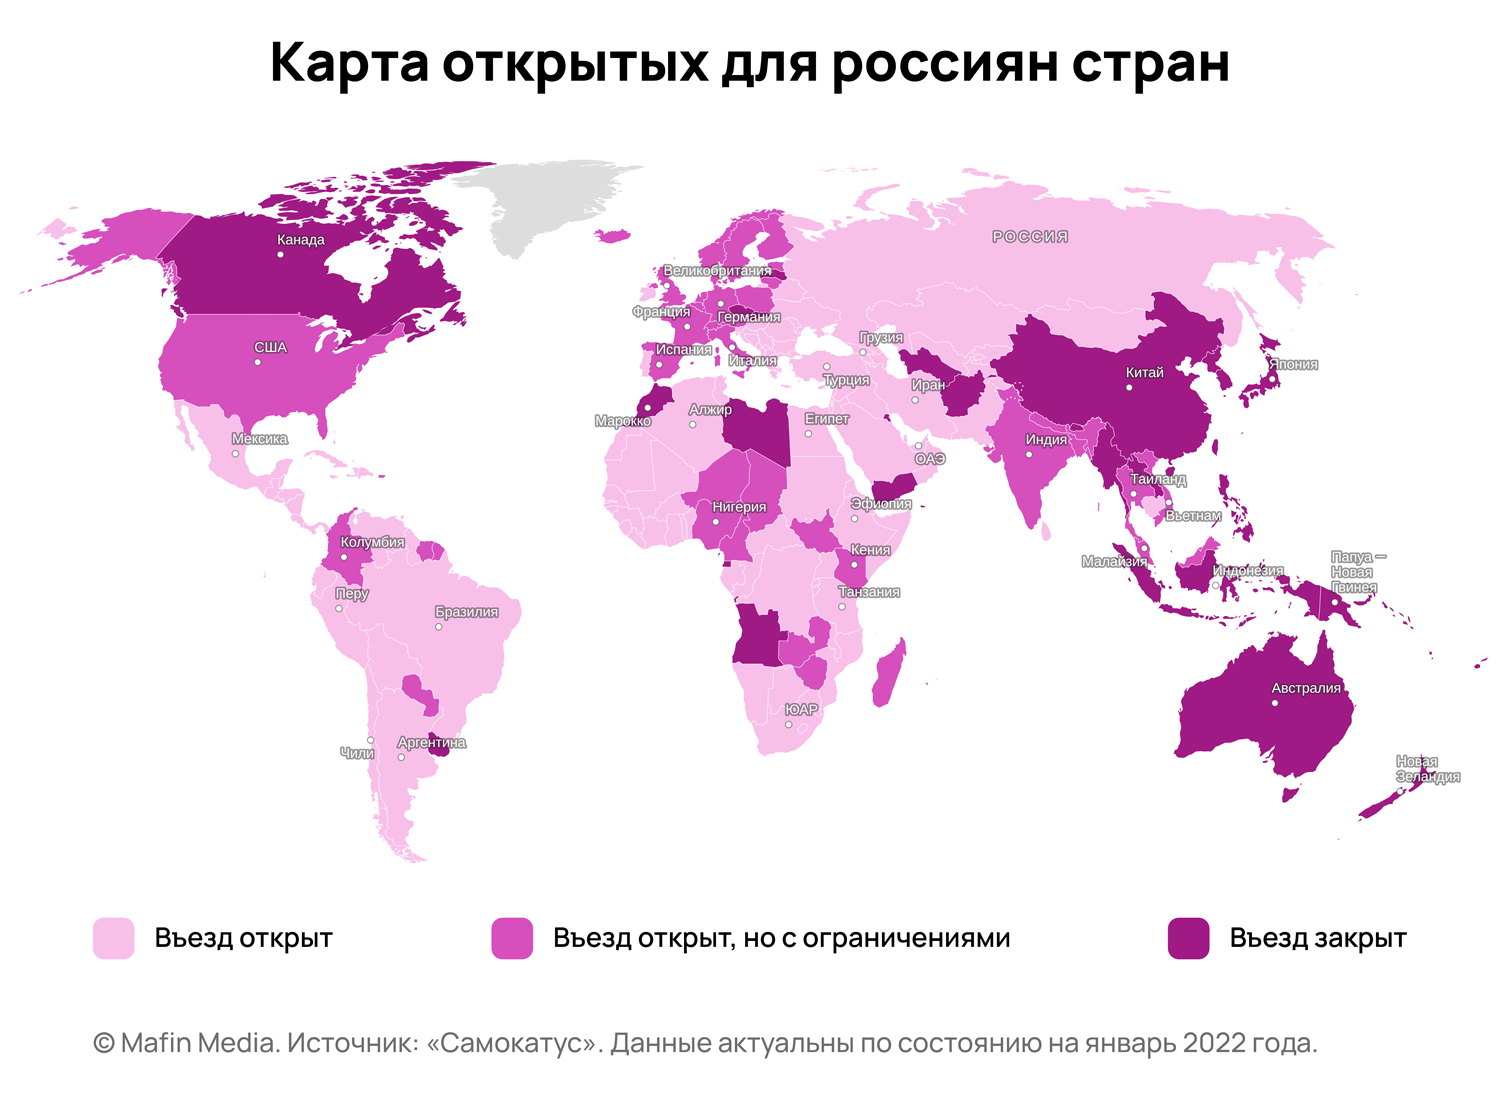 Какие страны открыты для россиян в 2022 году